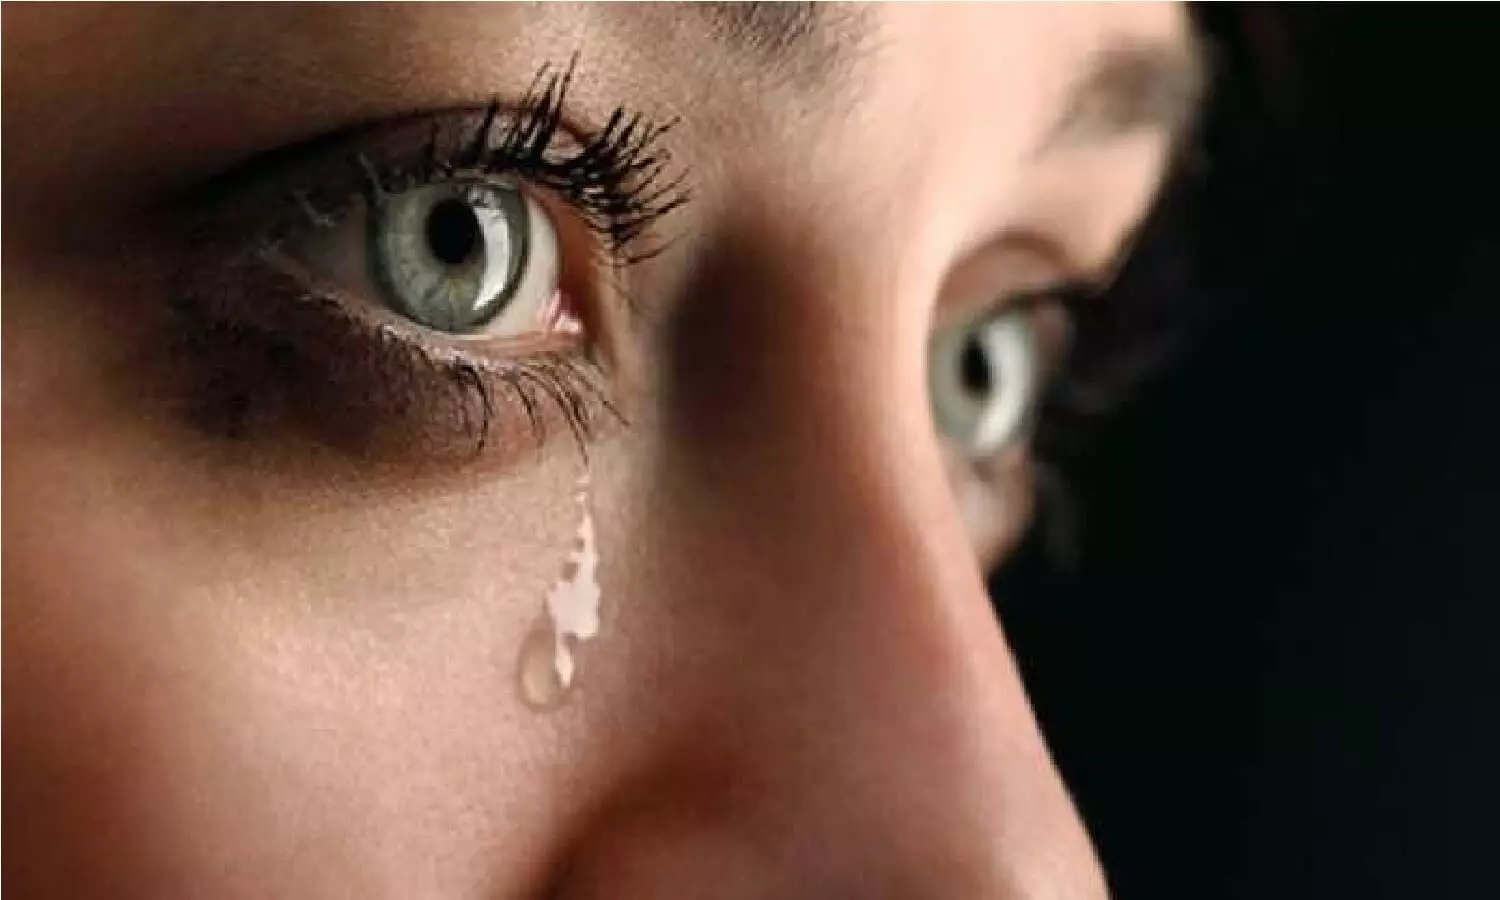 अगर नहीं रोते है आप तो तुरंत शुरू करे रोना, होंगे अंजान फायदे